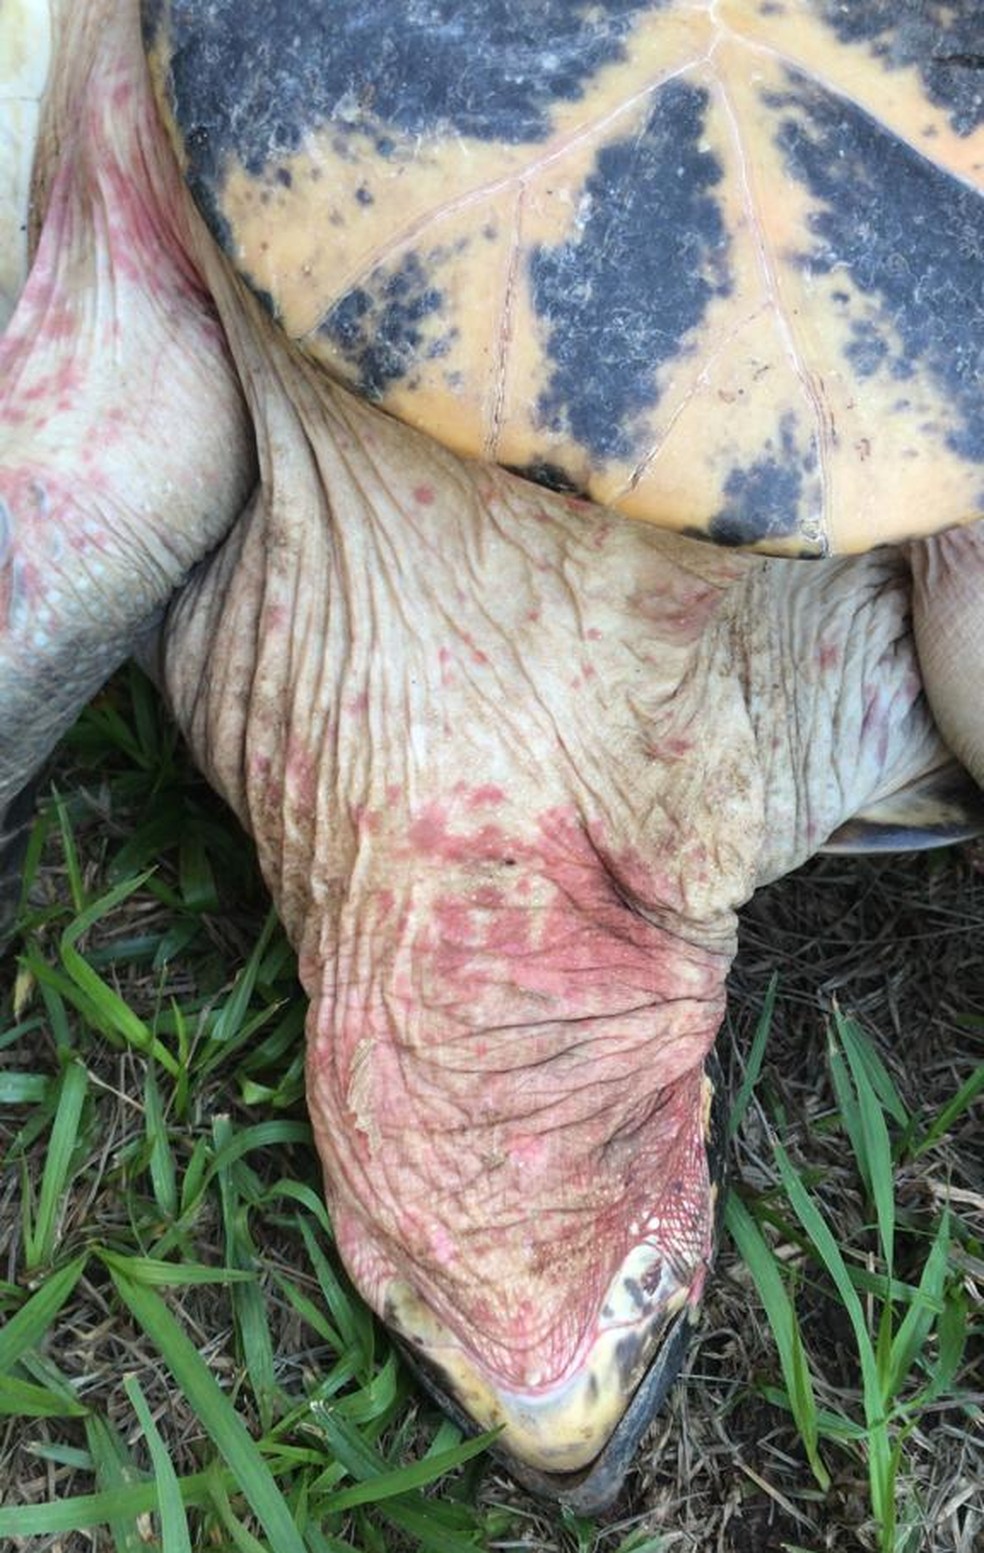 Tartaruga com vermelhidão no pescoço — Foto: Polícia Civil/Divulgação